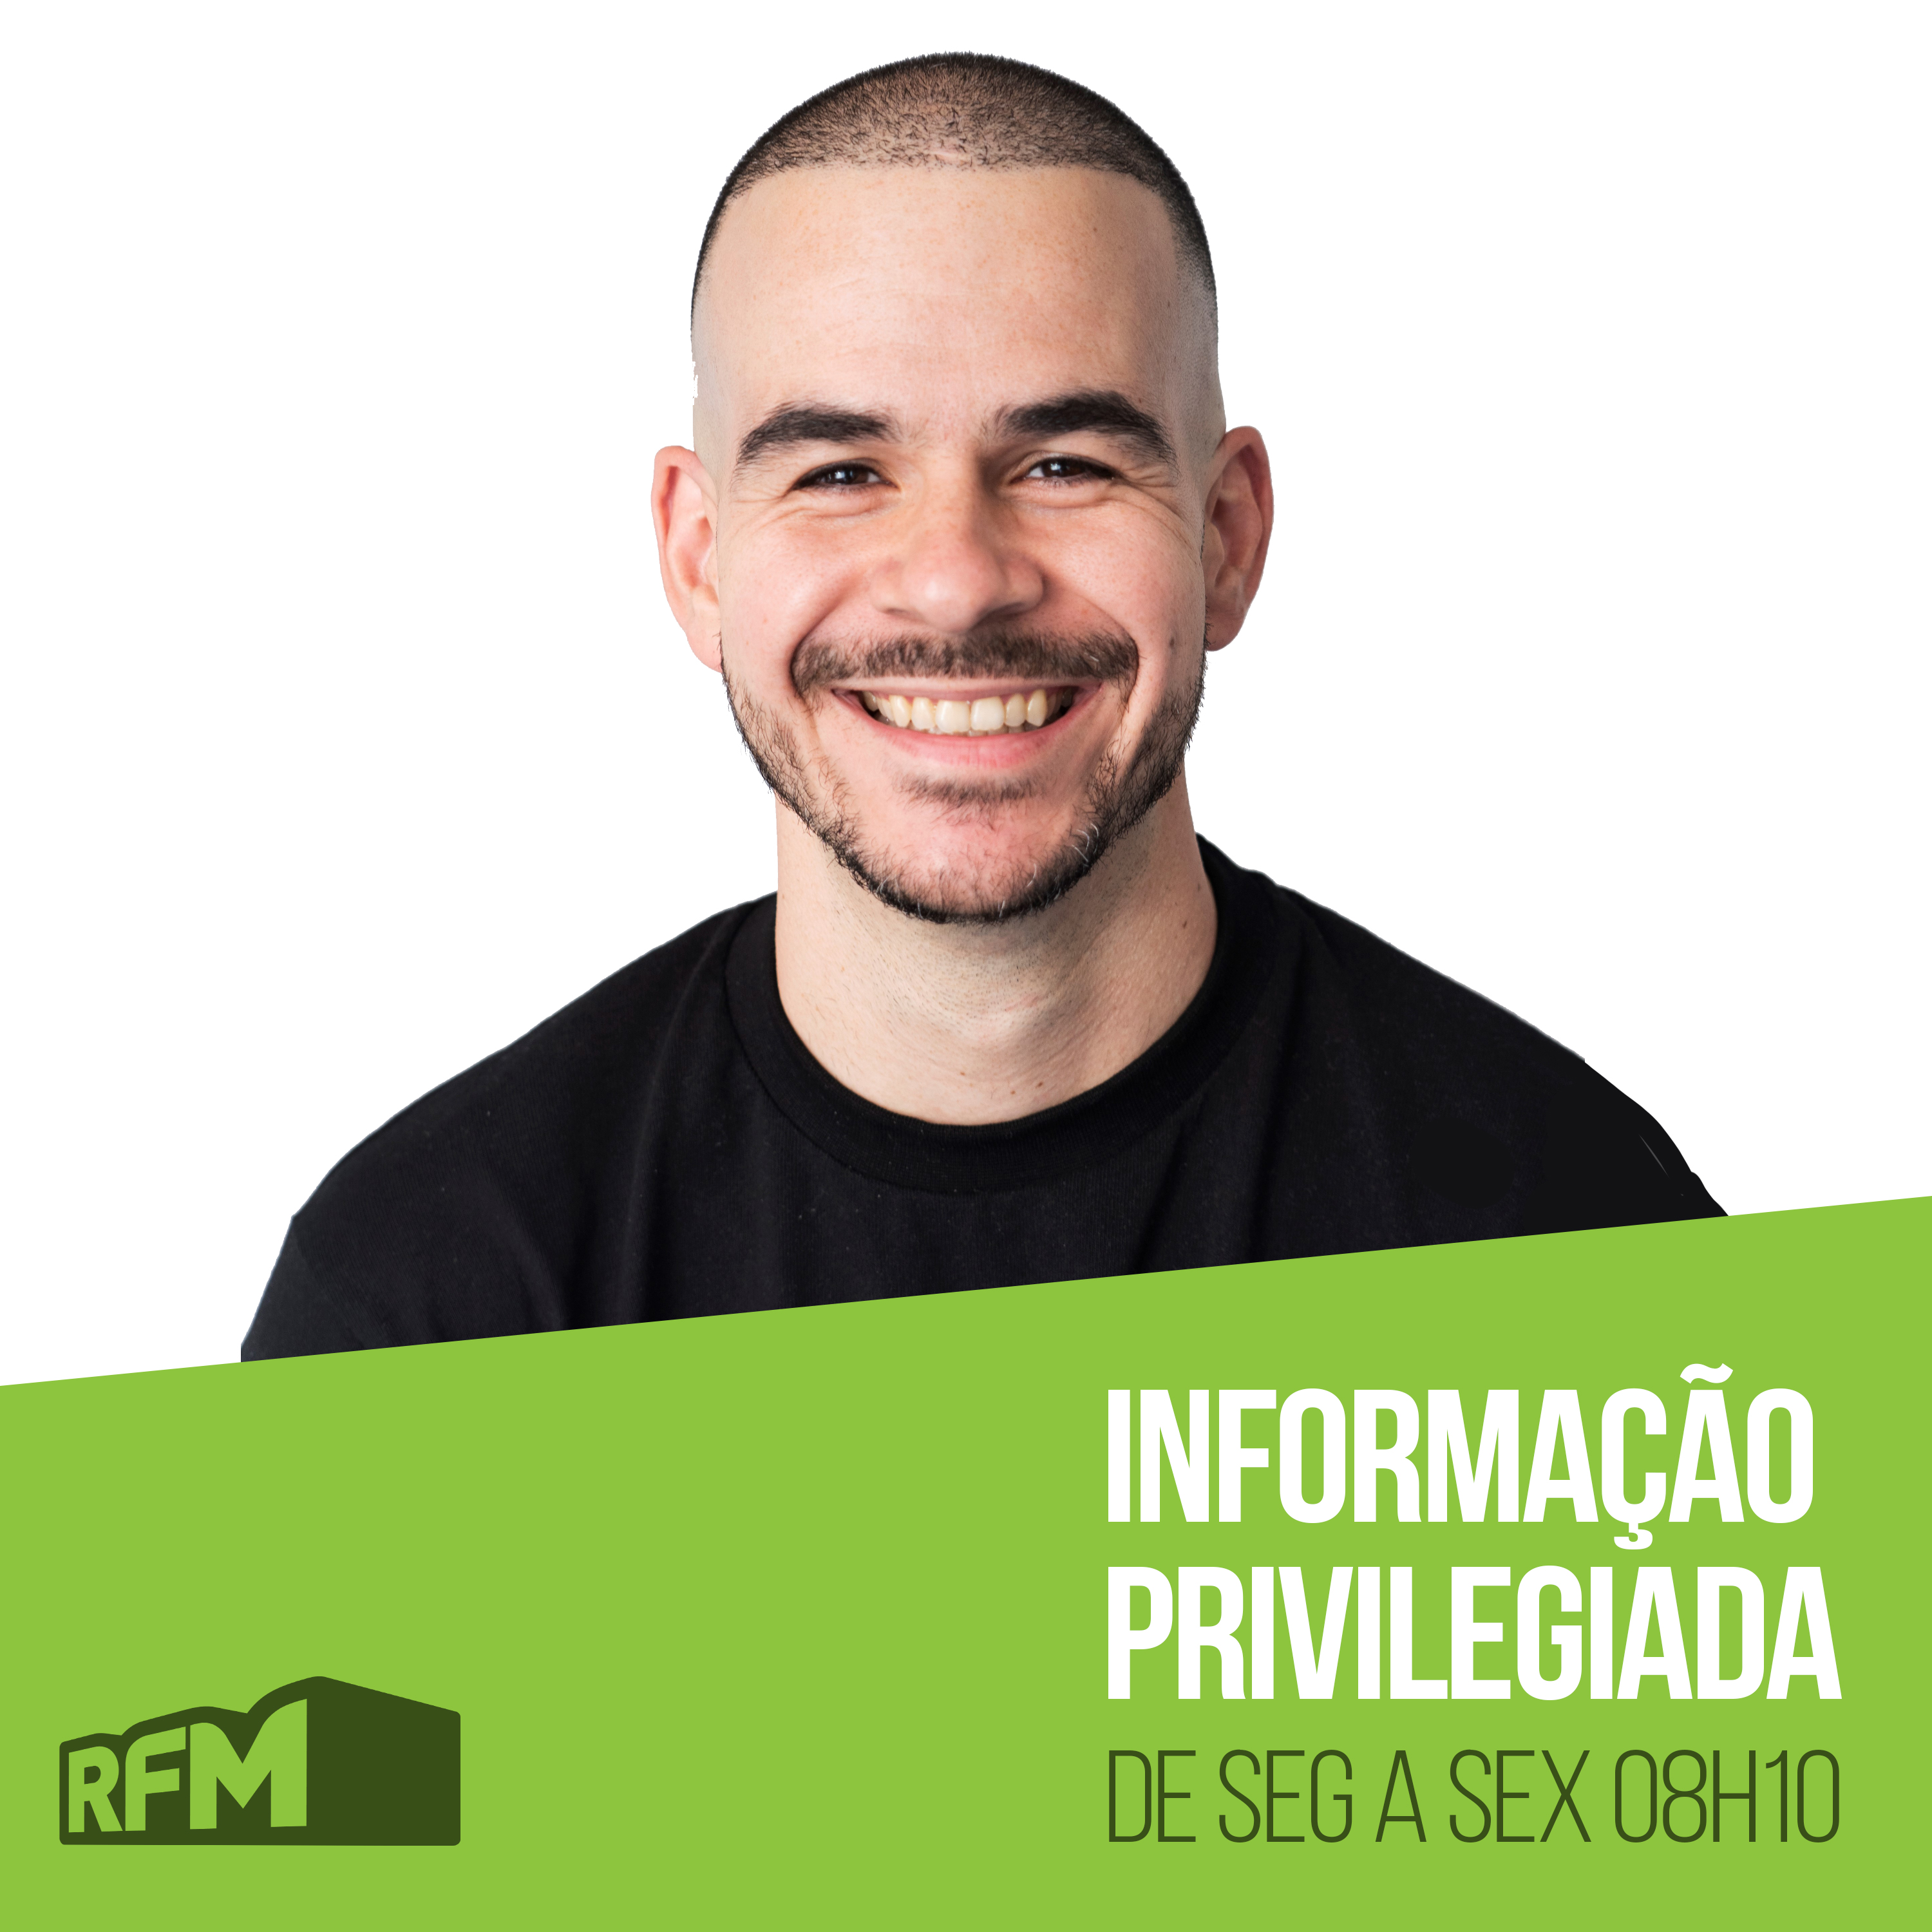 RFM - Informação Privilegiada: O SPEECH COACH DE ANTÓNIO COSTA